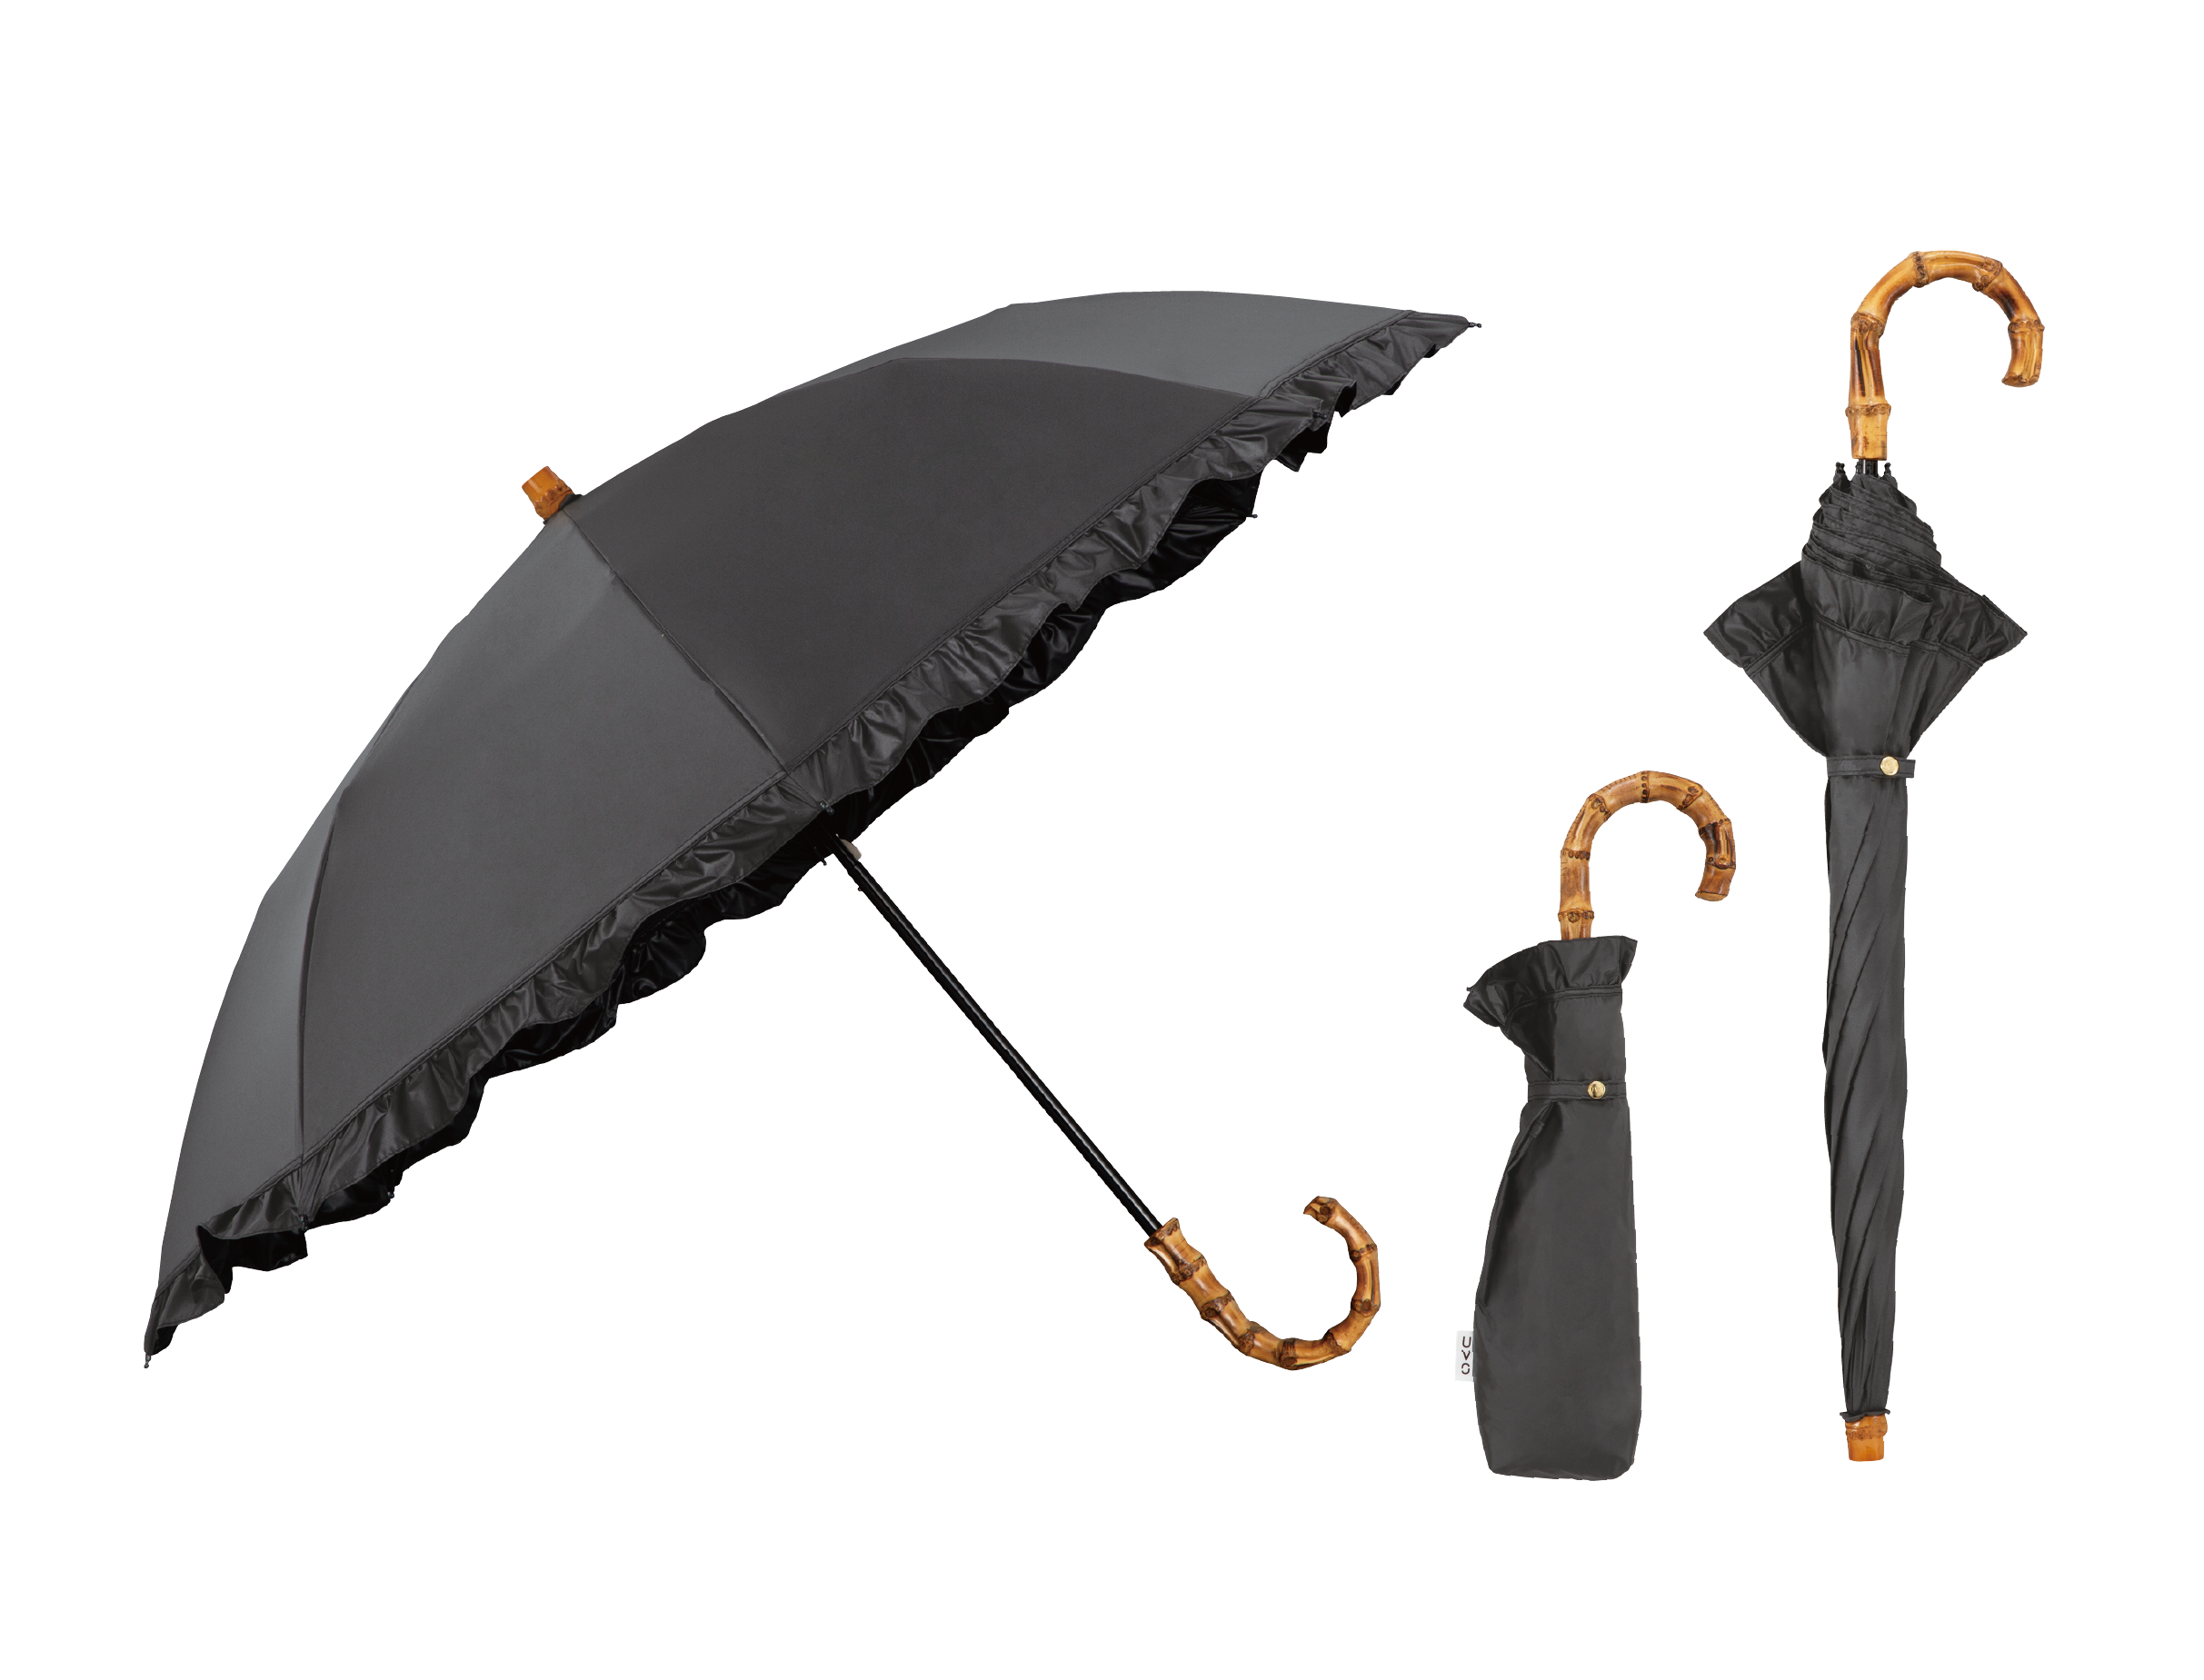 2段折りたたみ傘（黒）